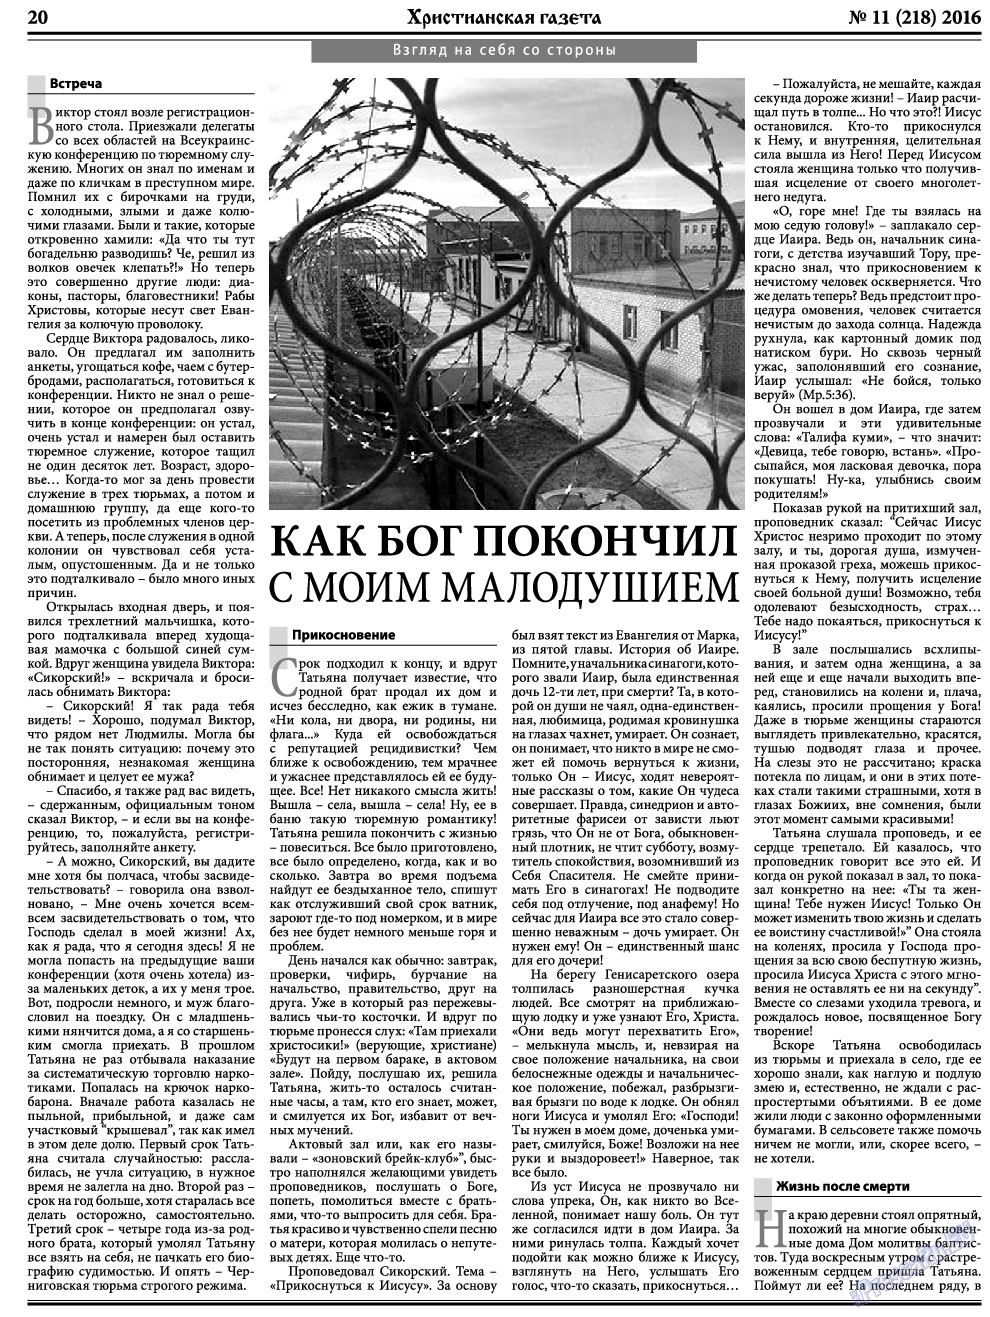 Христианская газета, газета. 2016 №11 стр.28